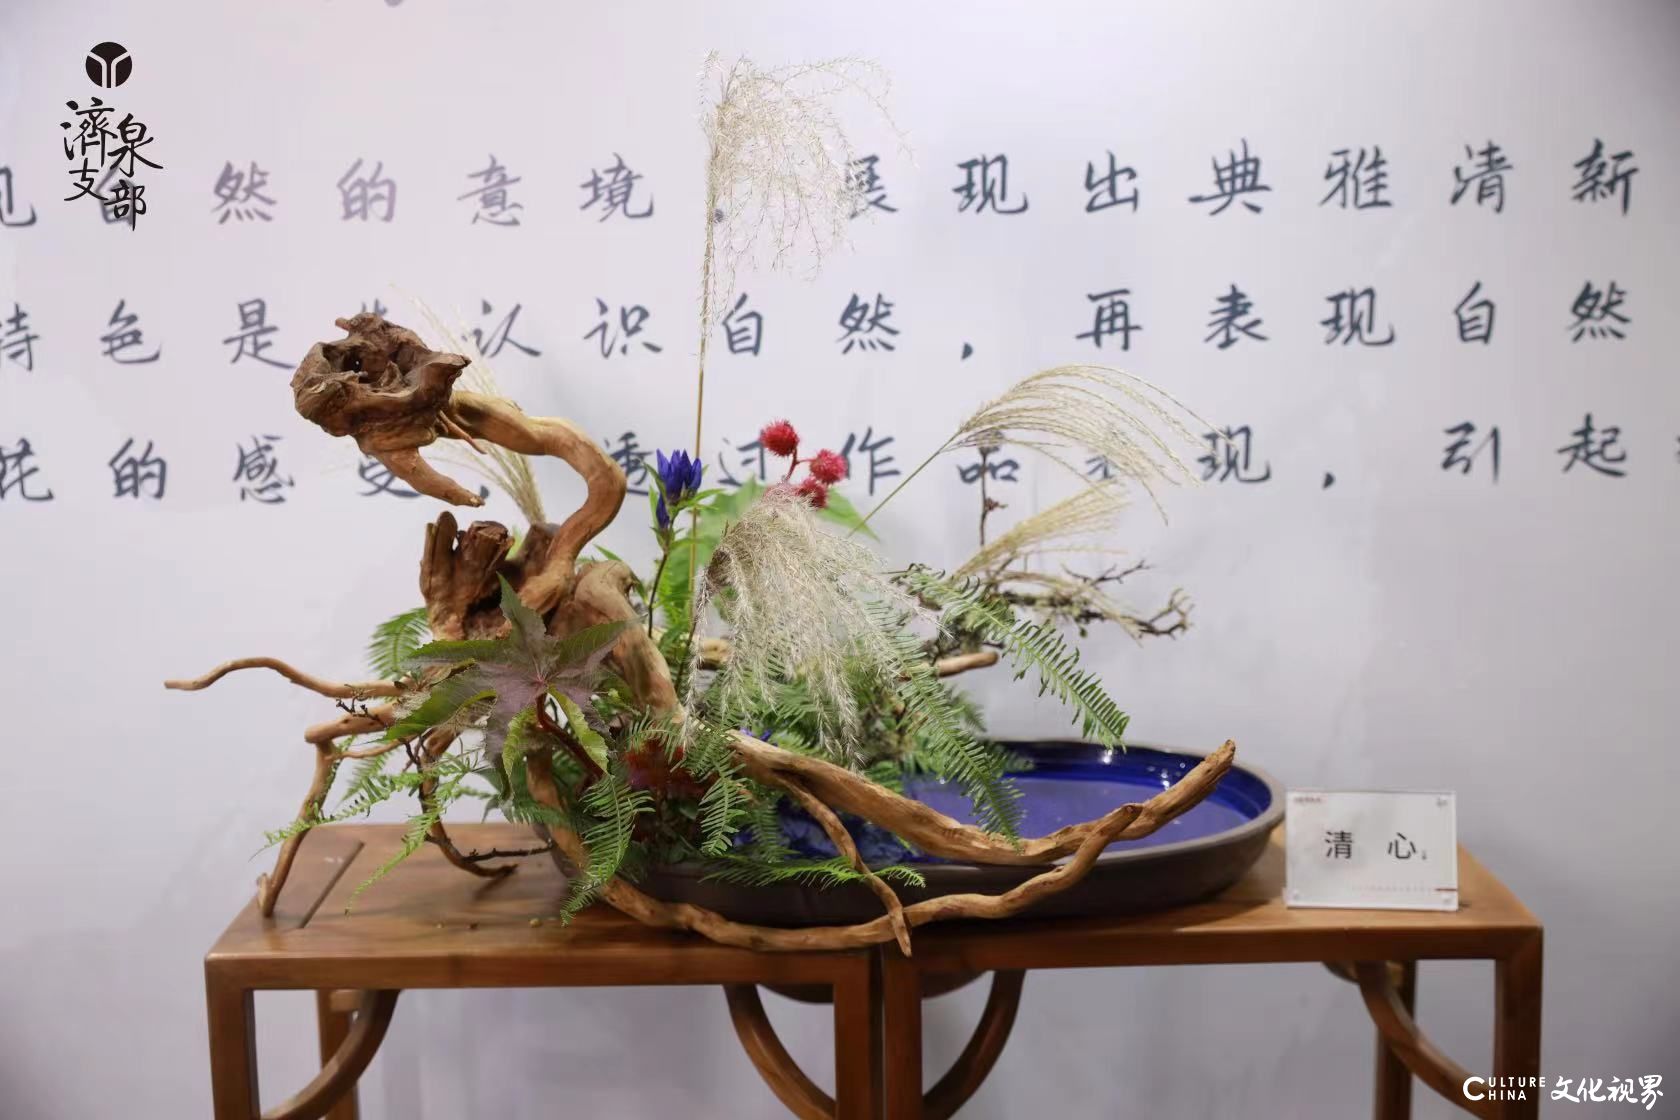 『恰盛春风』东方雅集式大型创意花展将于4月30日在济南银座商城盛大开幕